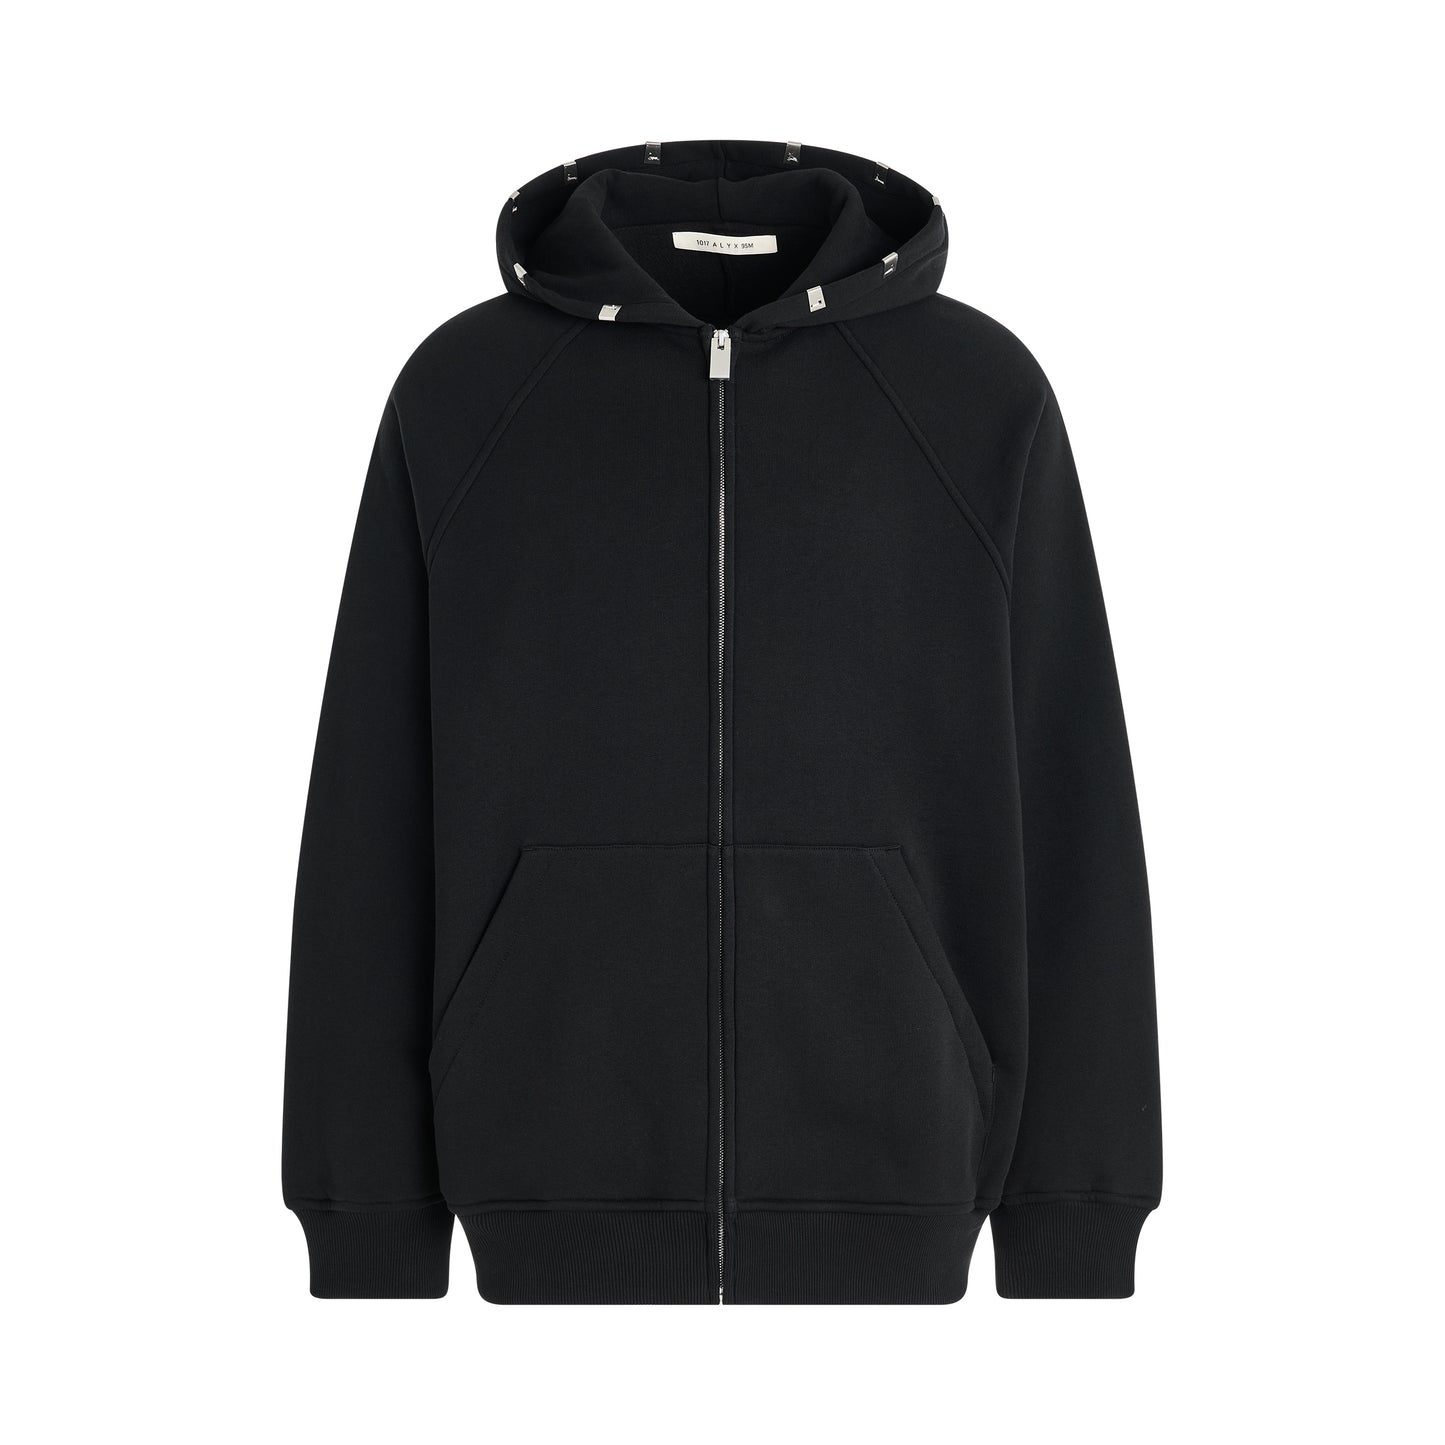 Lightercap Hood Zip Sweatshirt in Black